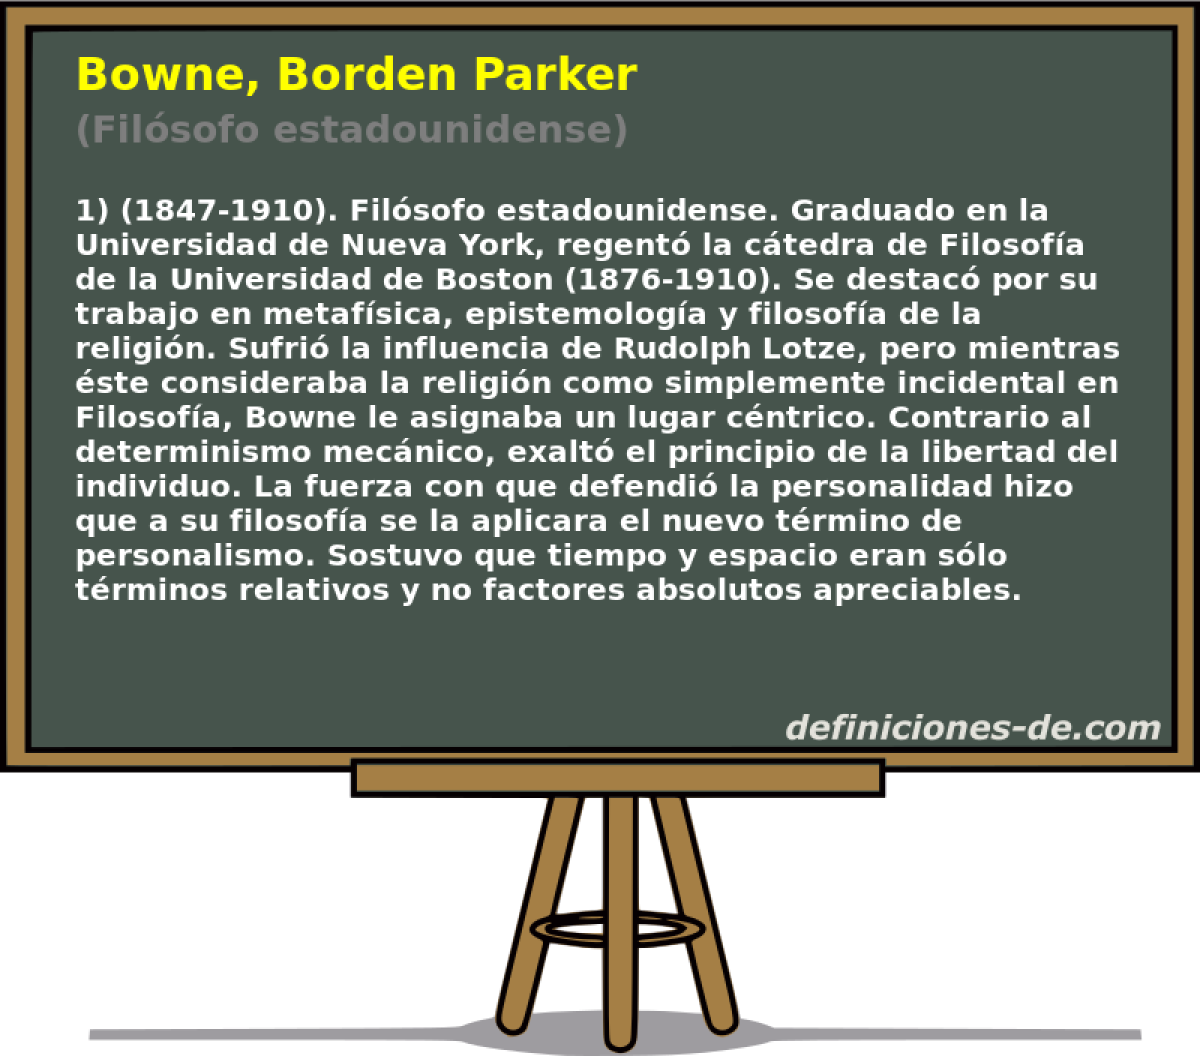 Bowne, Borden Parker (Filsofo estadounidense)